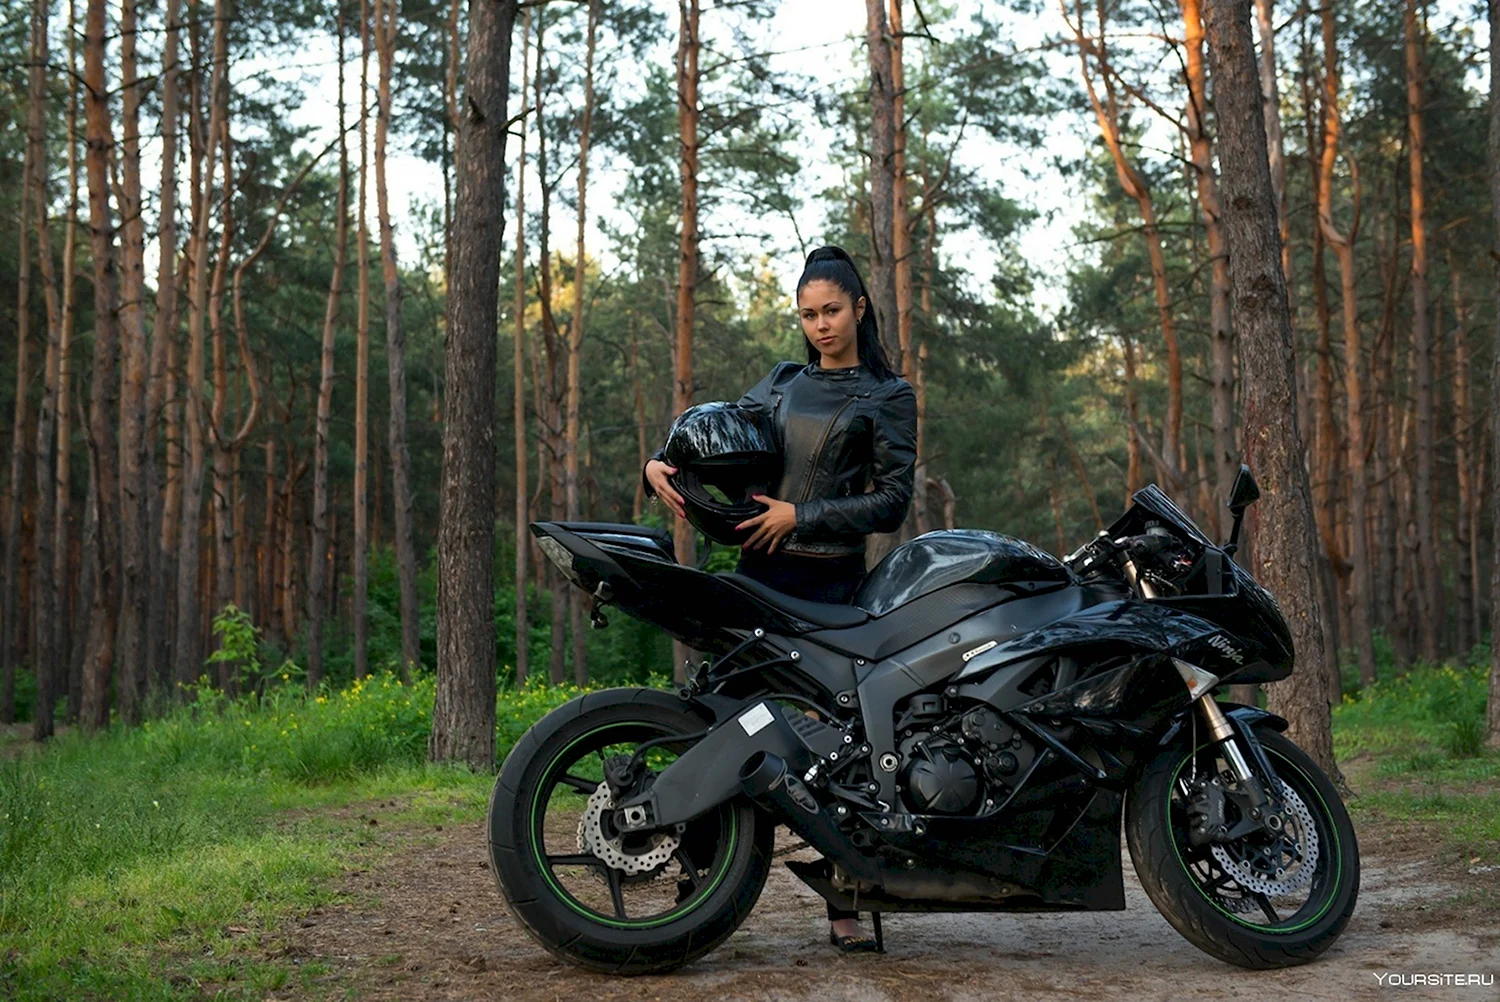 Девушка на мотоцикле в лесу